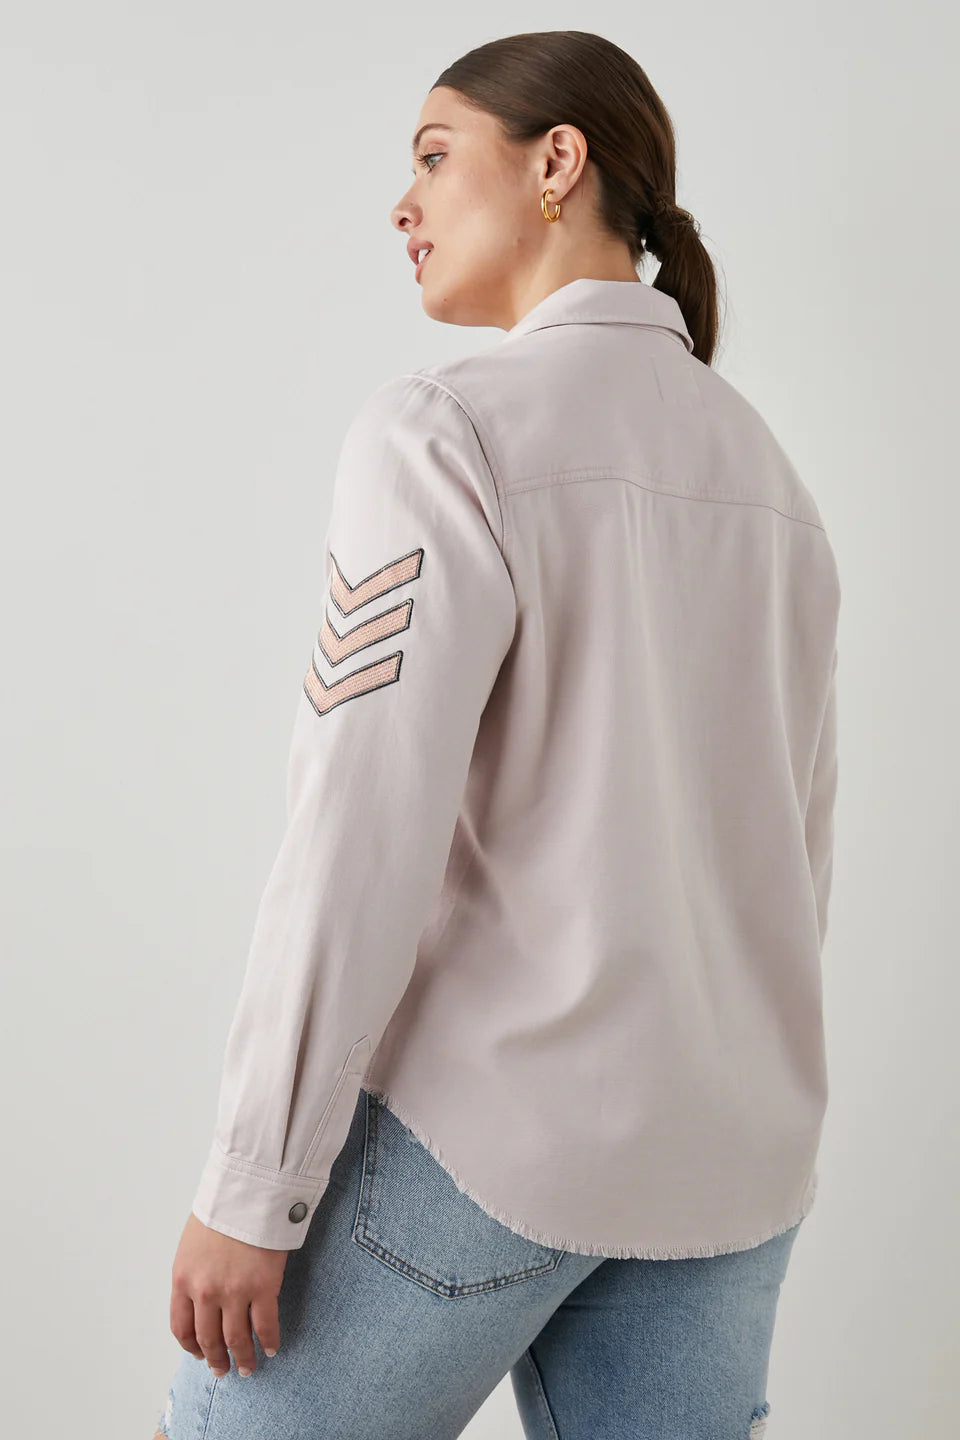 Rails Loren Shirt Jacket Rose - Pure Boutique